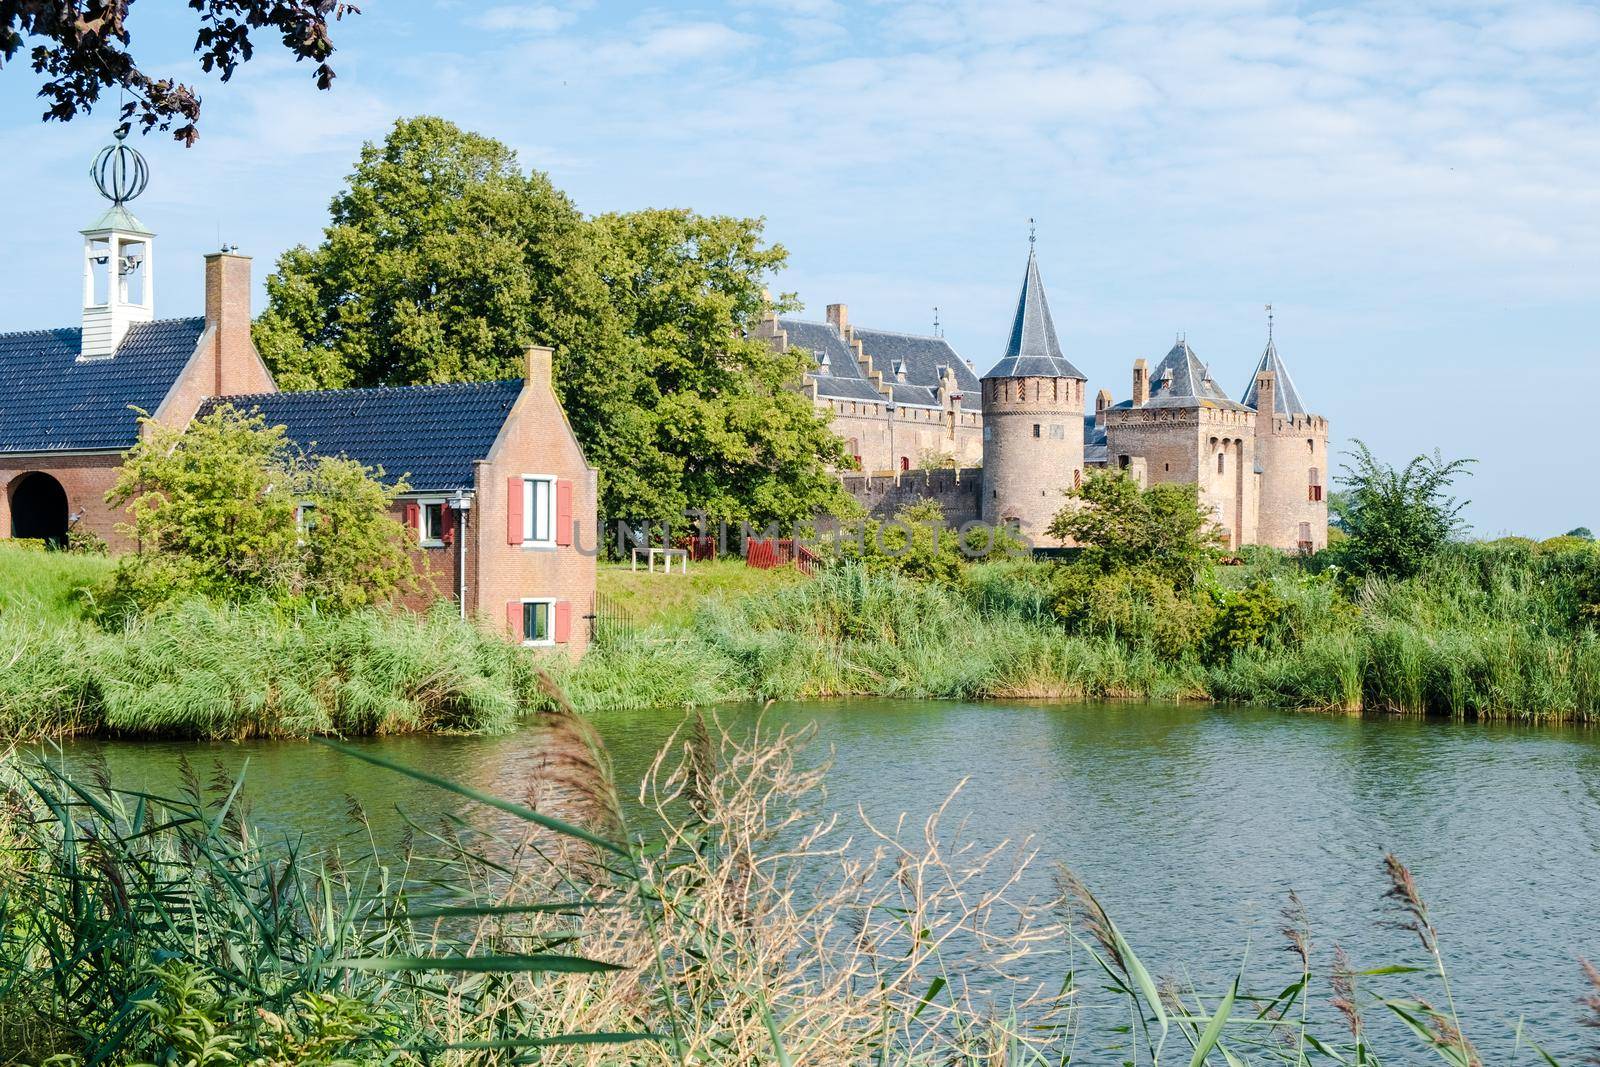 Muiderslot castle near Amsterdam - Netherlands, Muideslot during summer in the Netherlands. Europe